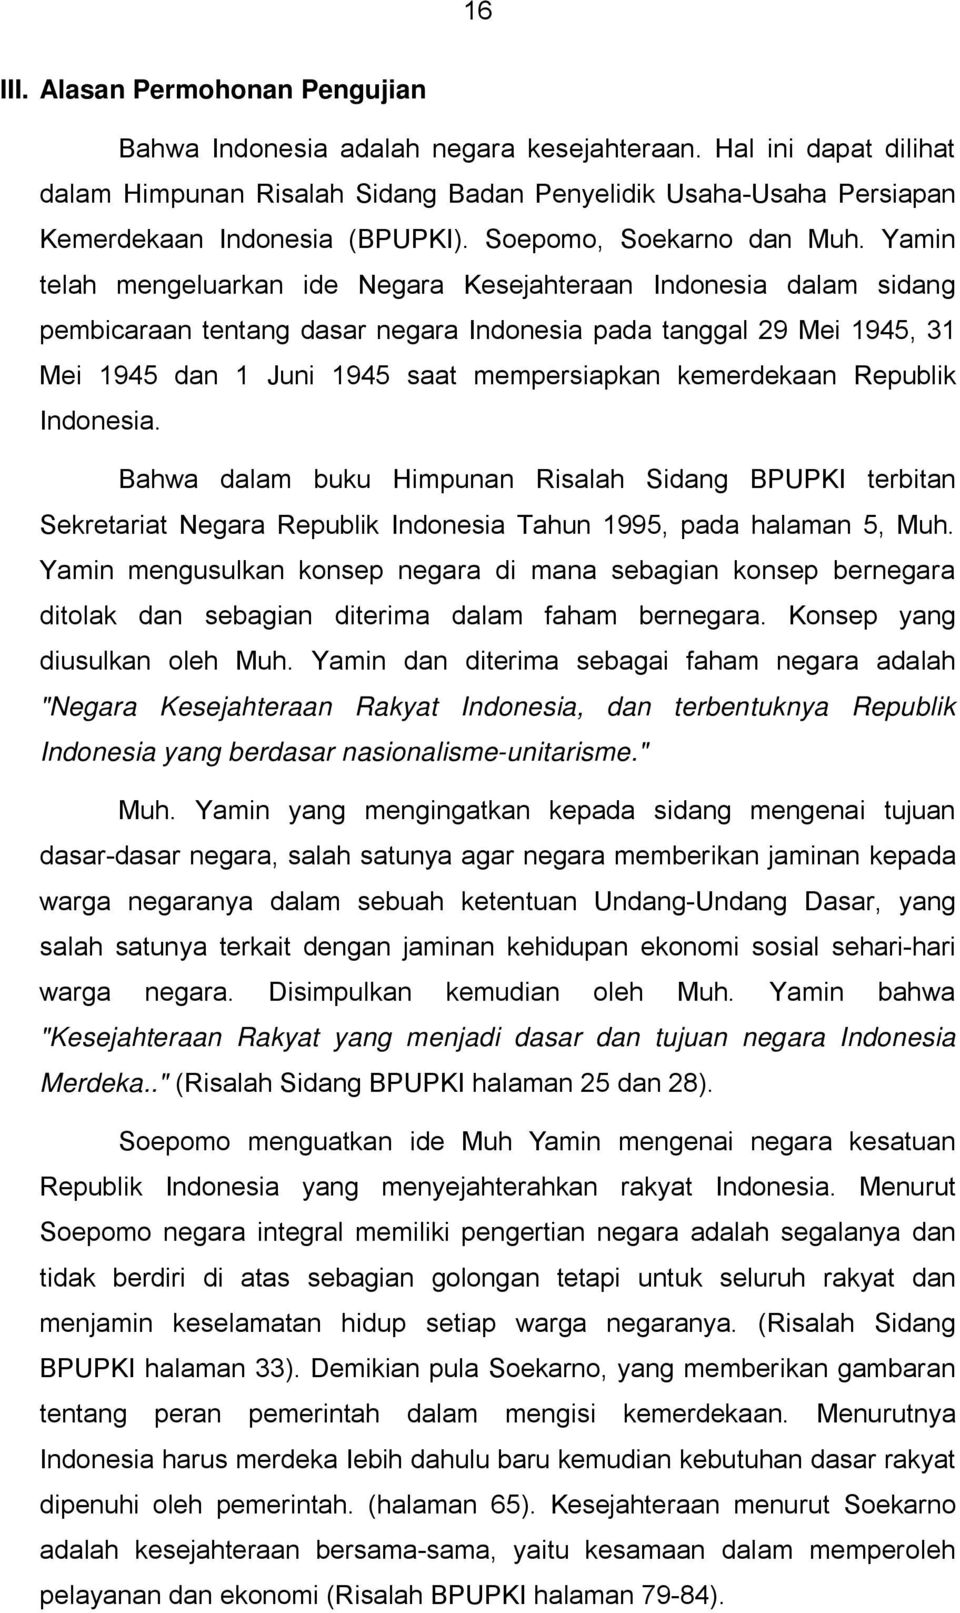 Yamin telah mengeluarkan ide Negara Kesejahteraan Indonesia dalam sidang pembicaraan tentang dasar negara Indonesia pada tanggal 29 Mei 1945, 31 Mei 1945 dan 1 Juni 1945 saat mempersiapkan